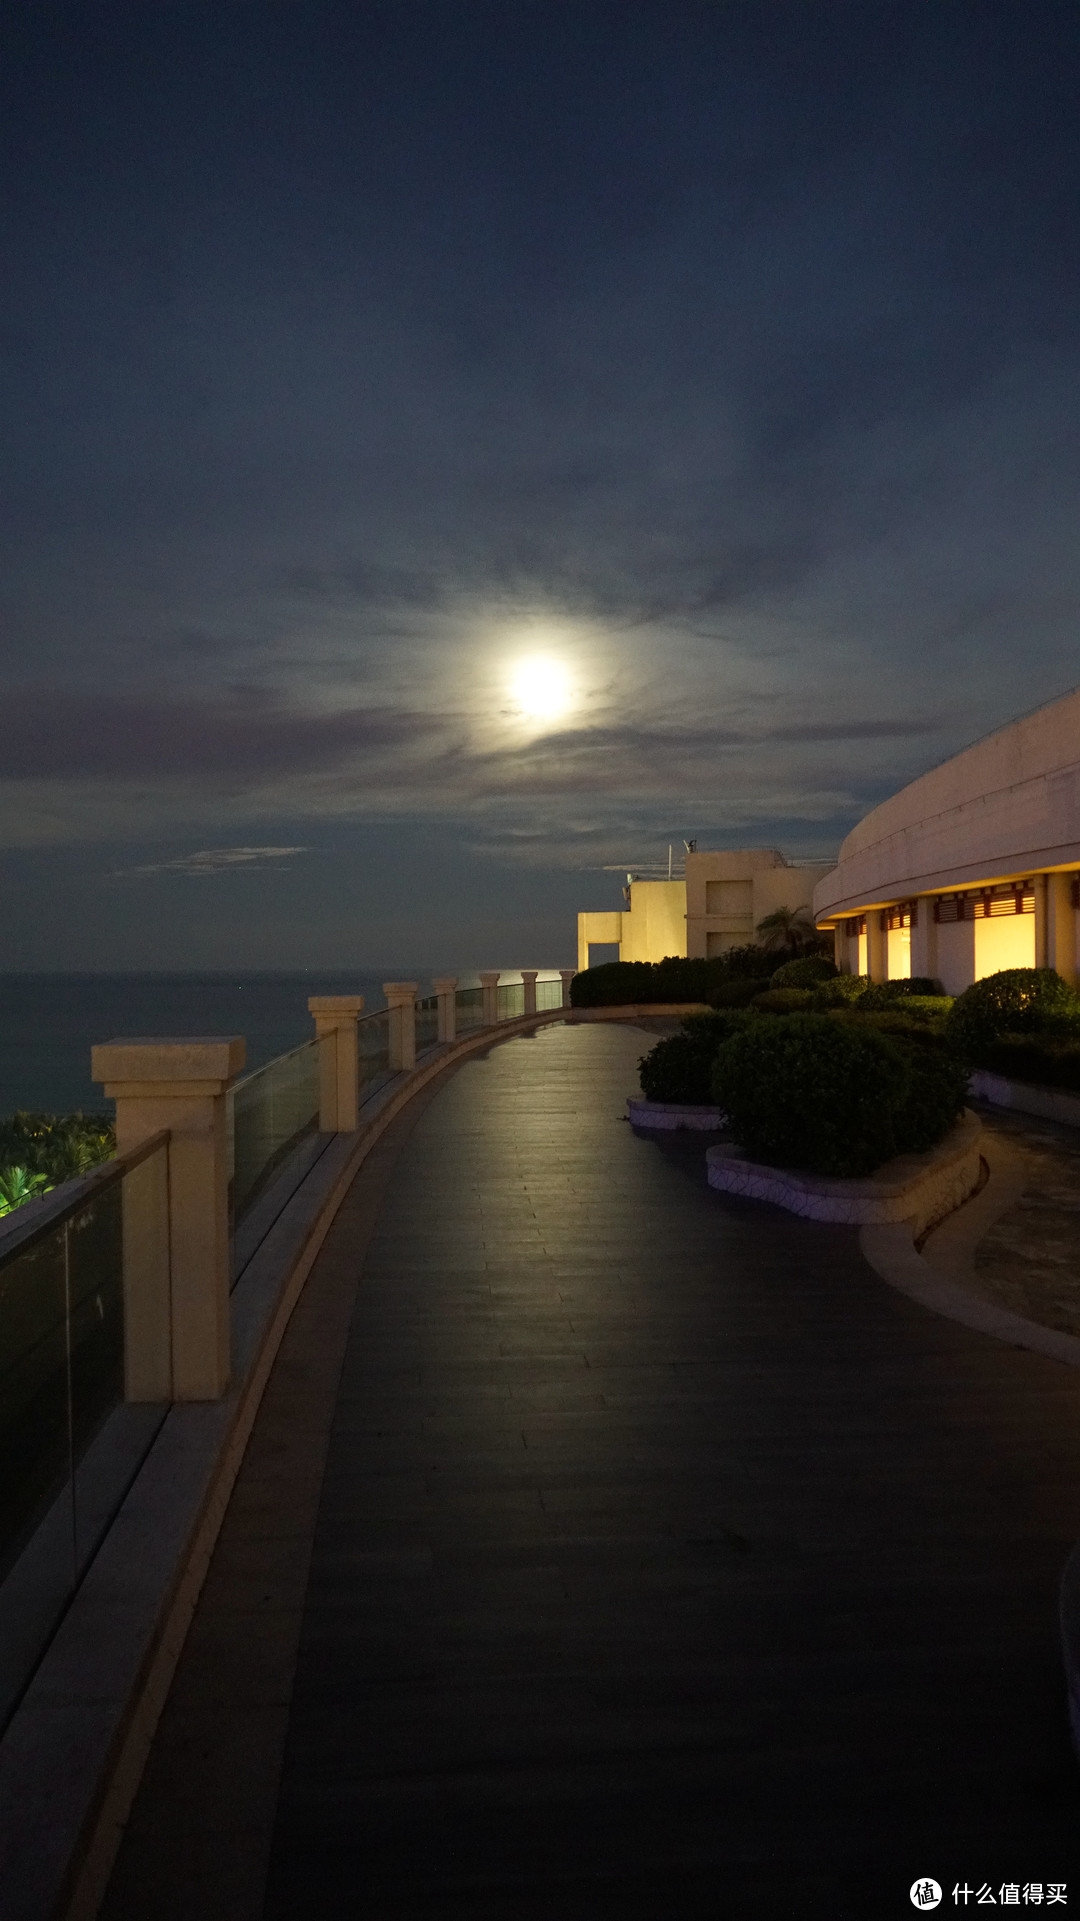 景色旖旎、夕阳绝美的海棠湾一线海景酒店 - 喜来登度假酒店 家庭套房 入住体验